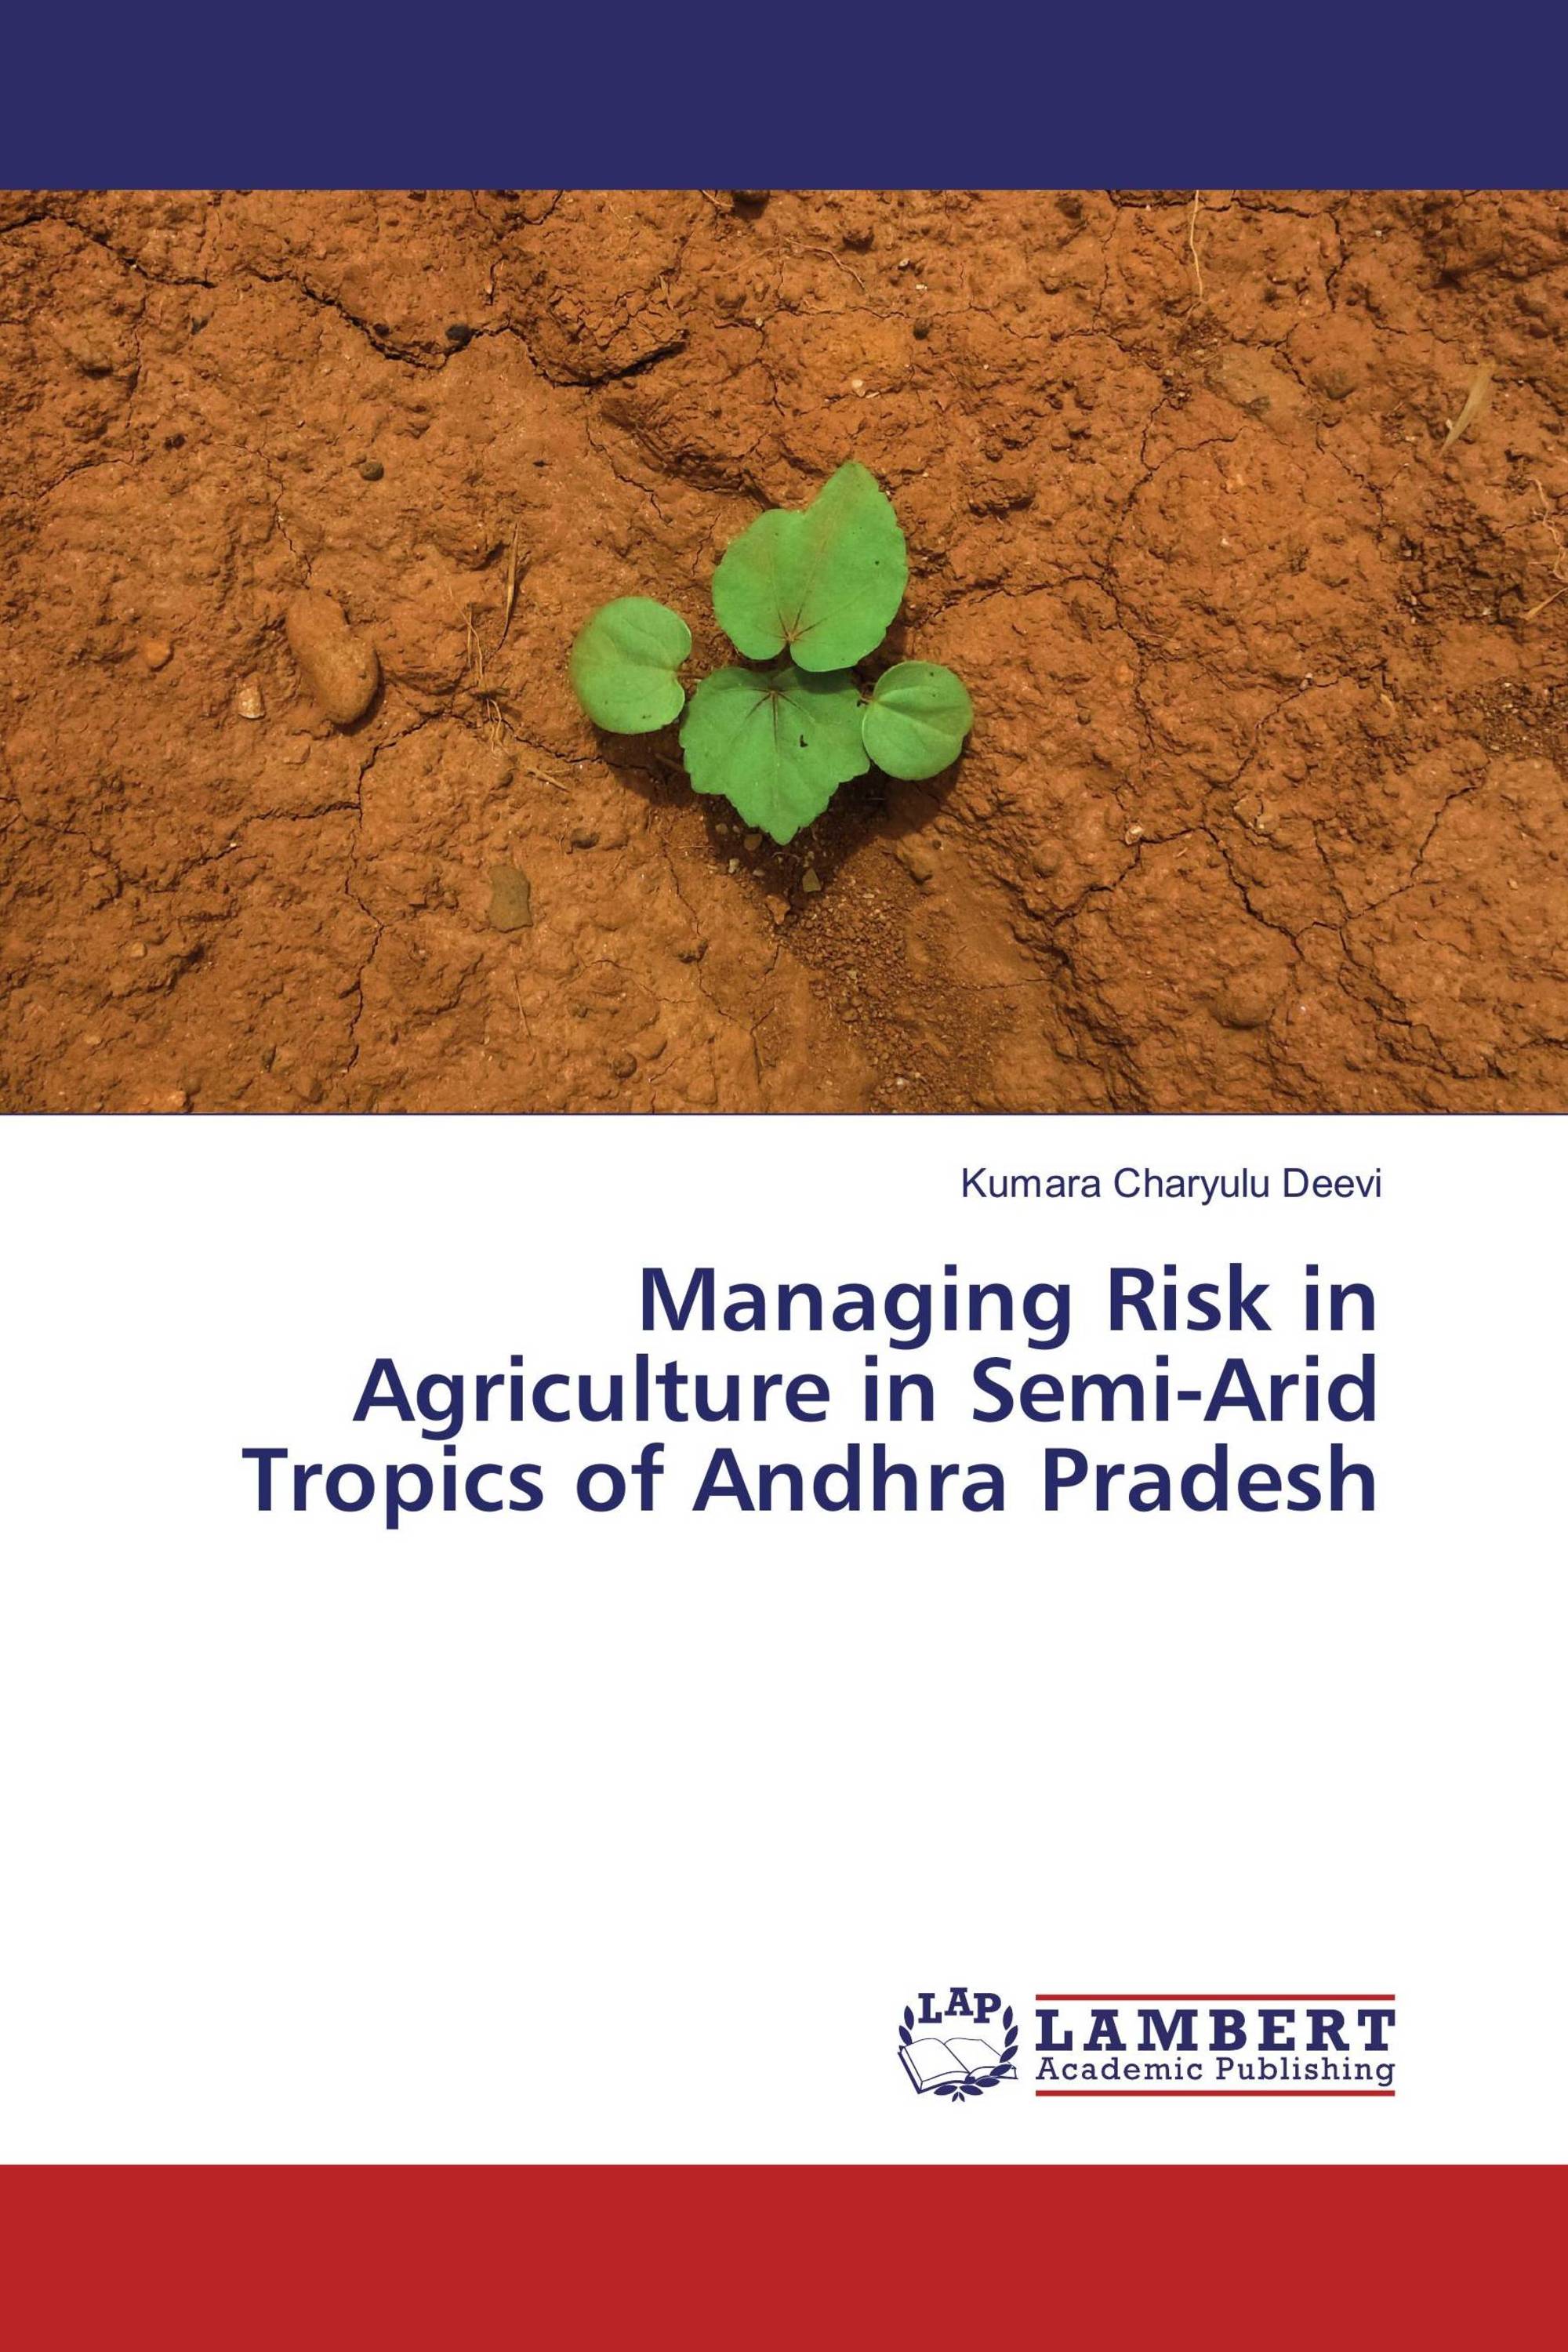 Managing Risk in Agriculture in Semi-Arid Tropics of Andhra Pradesh